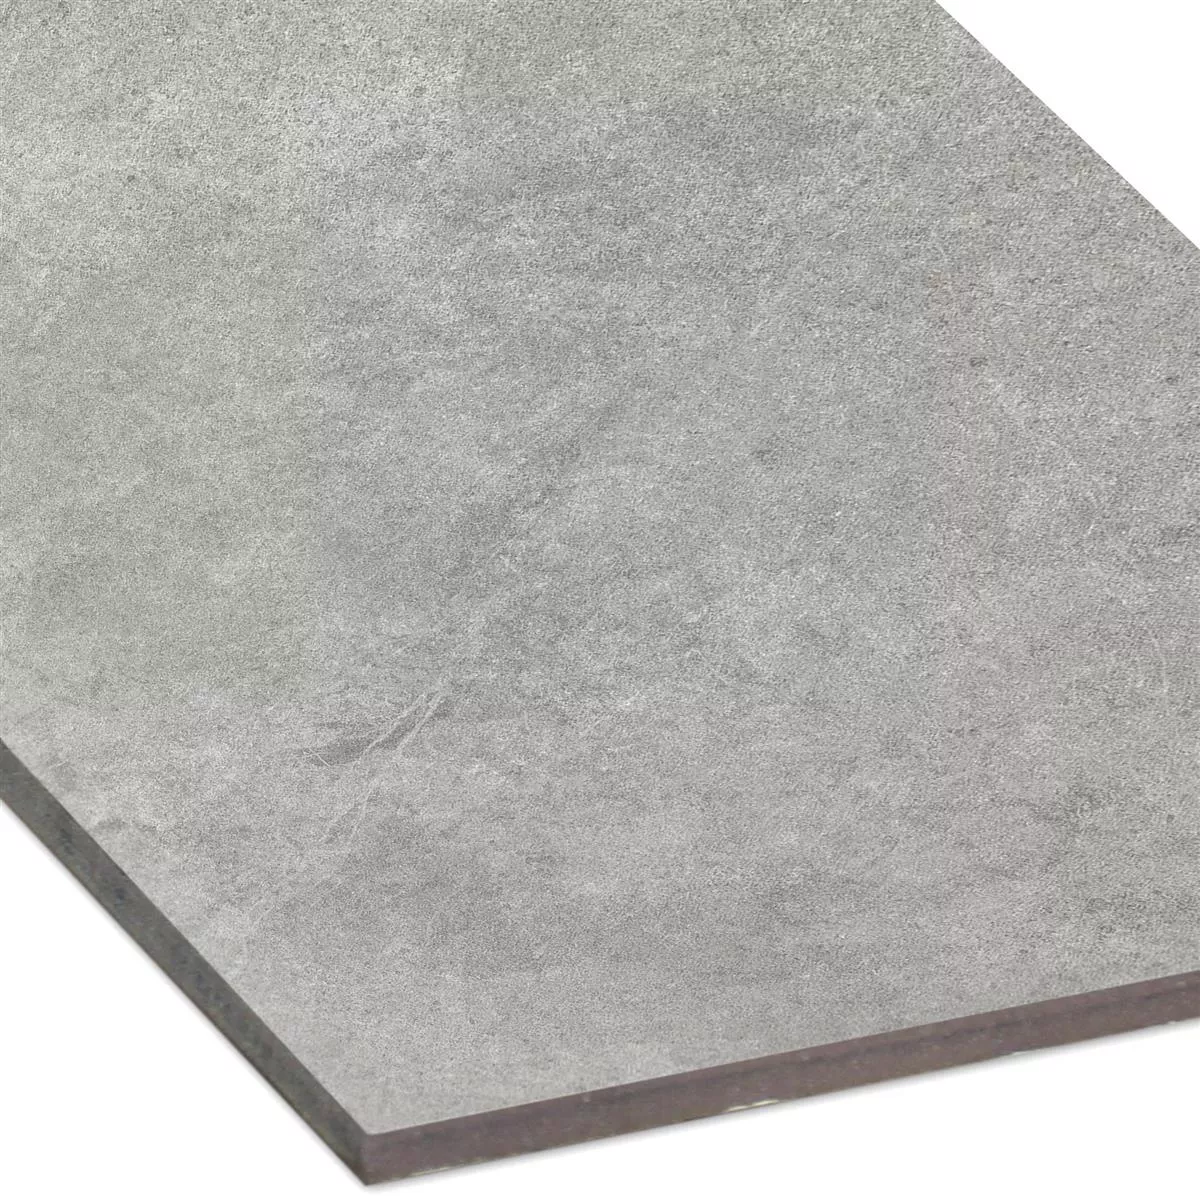 Sample Floor Tiles Montana Unglazed Dark Grey 30x60cm / R10B